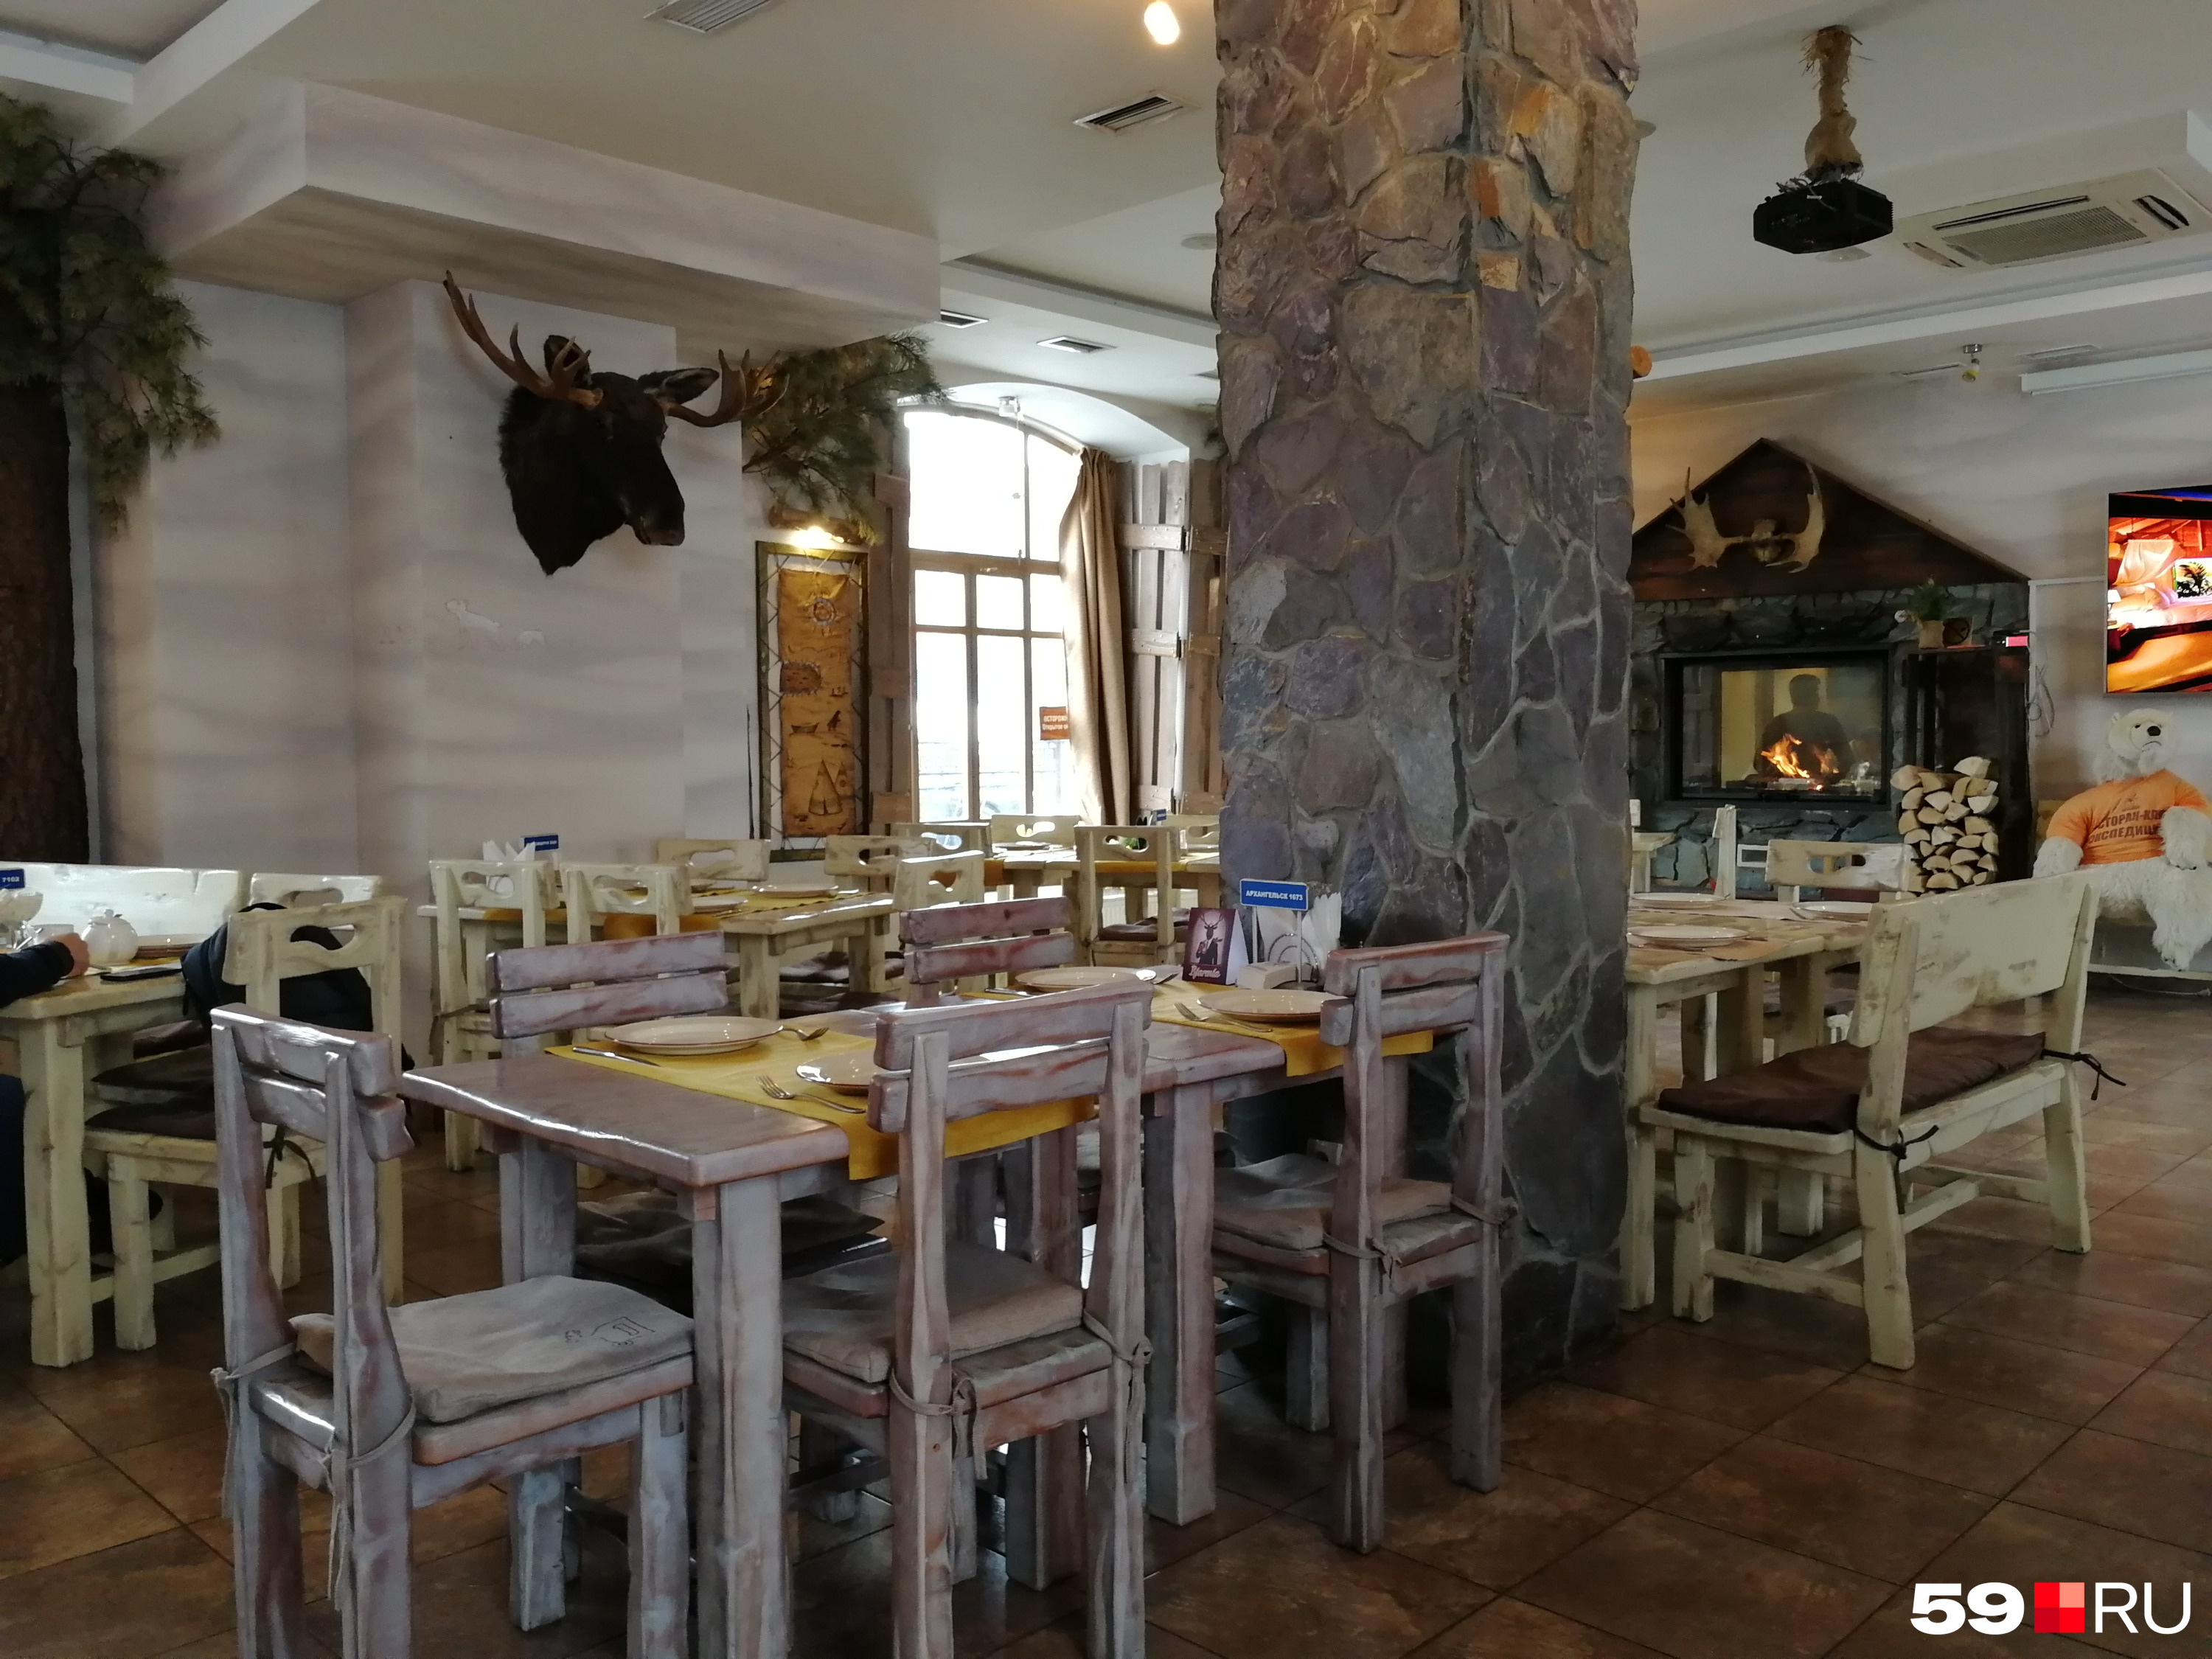 Ресторан напоминает охотничий домик или туристическую базу